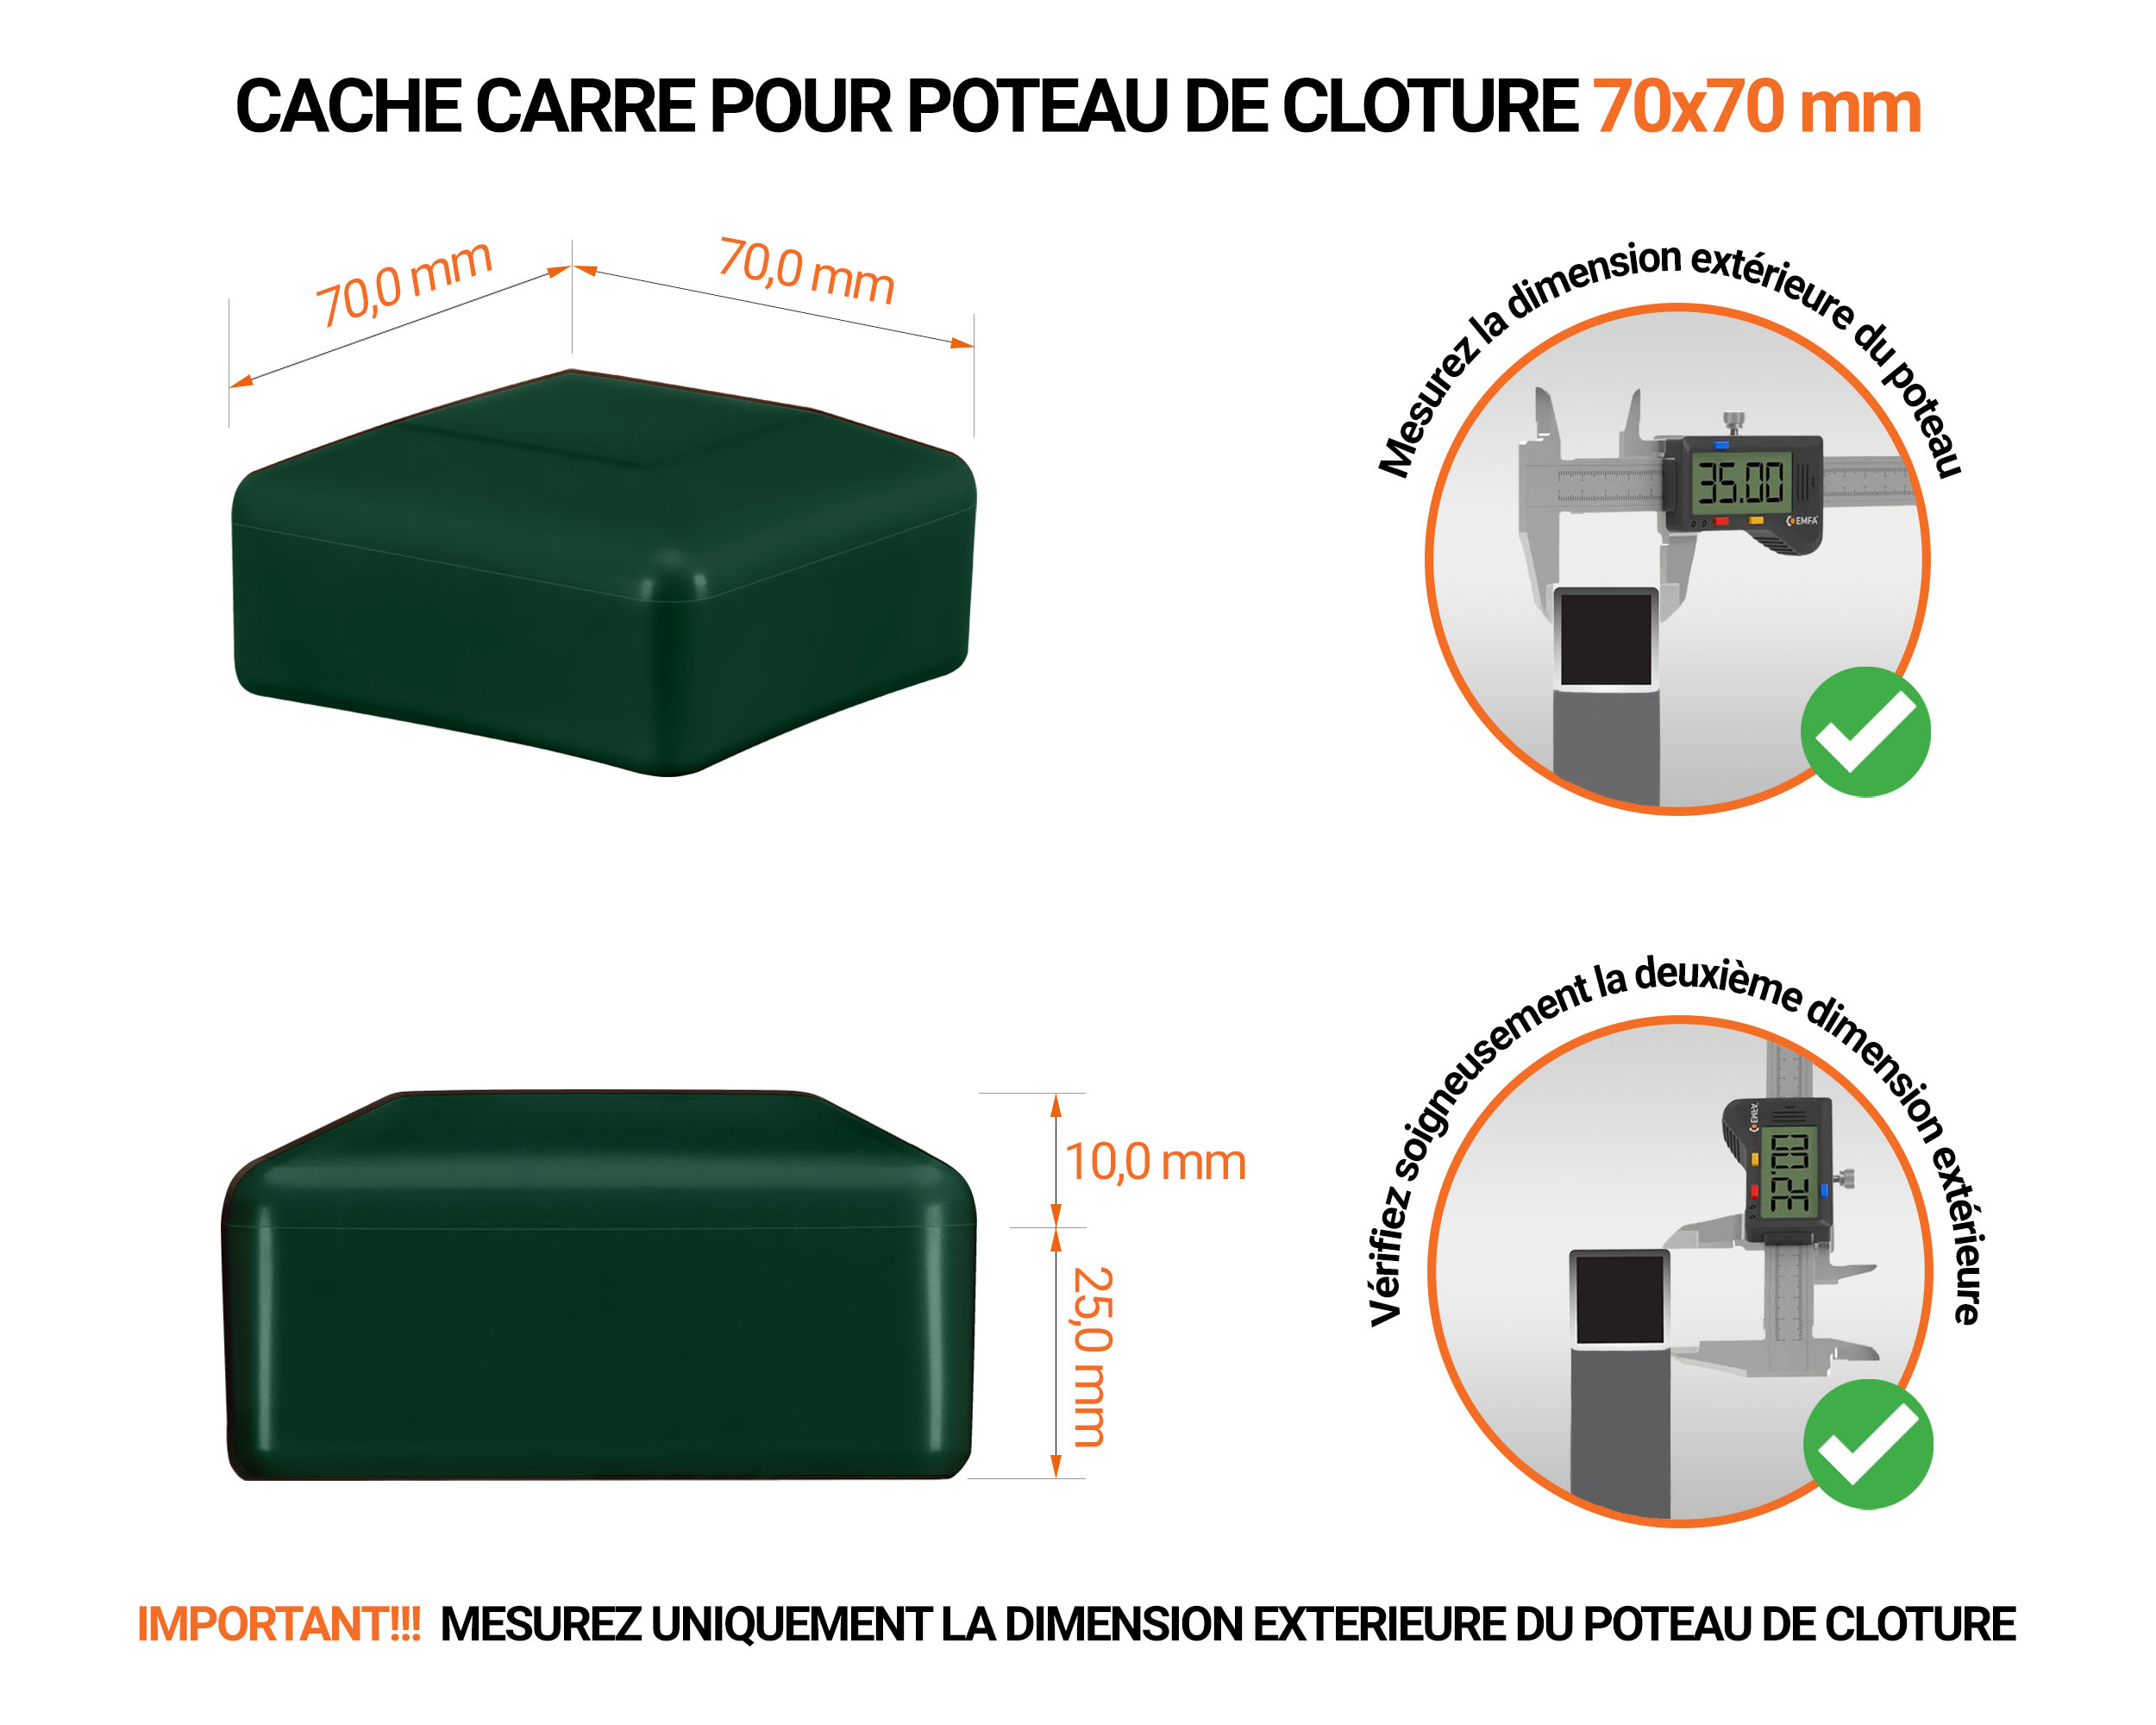 Capuchons pour poteaux carrés de couleur vert. Embout plastique pour des dimensions de poteaux de 70x70 mm avec dimensions et guide de mesure correcte du capuchon.